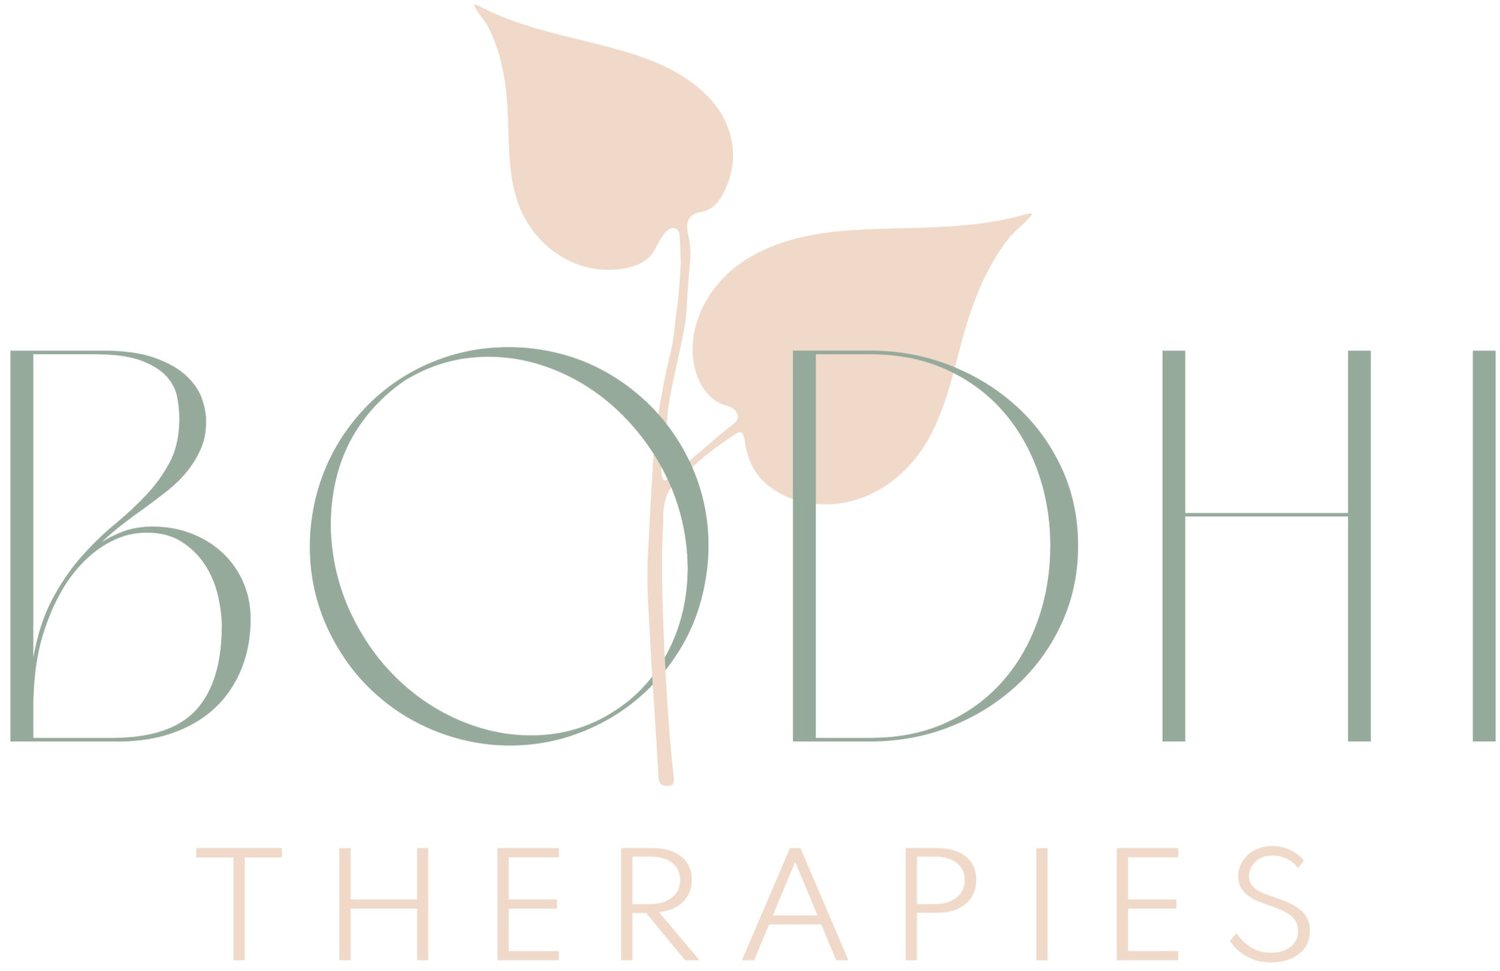 Bodhi Therapies